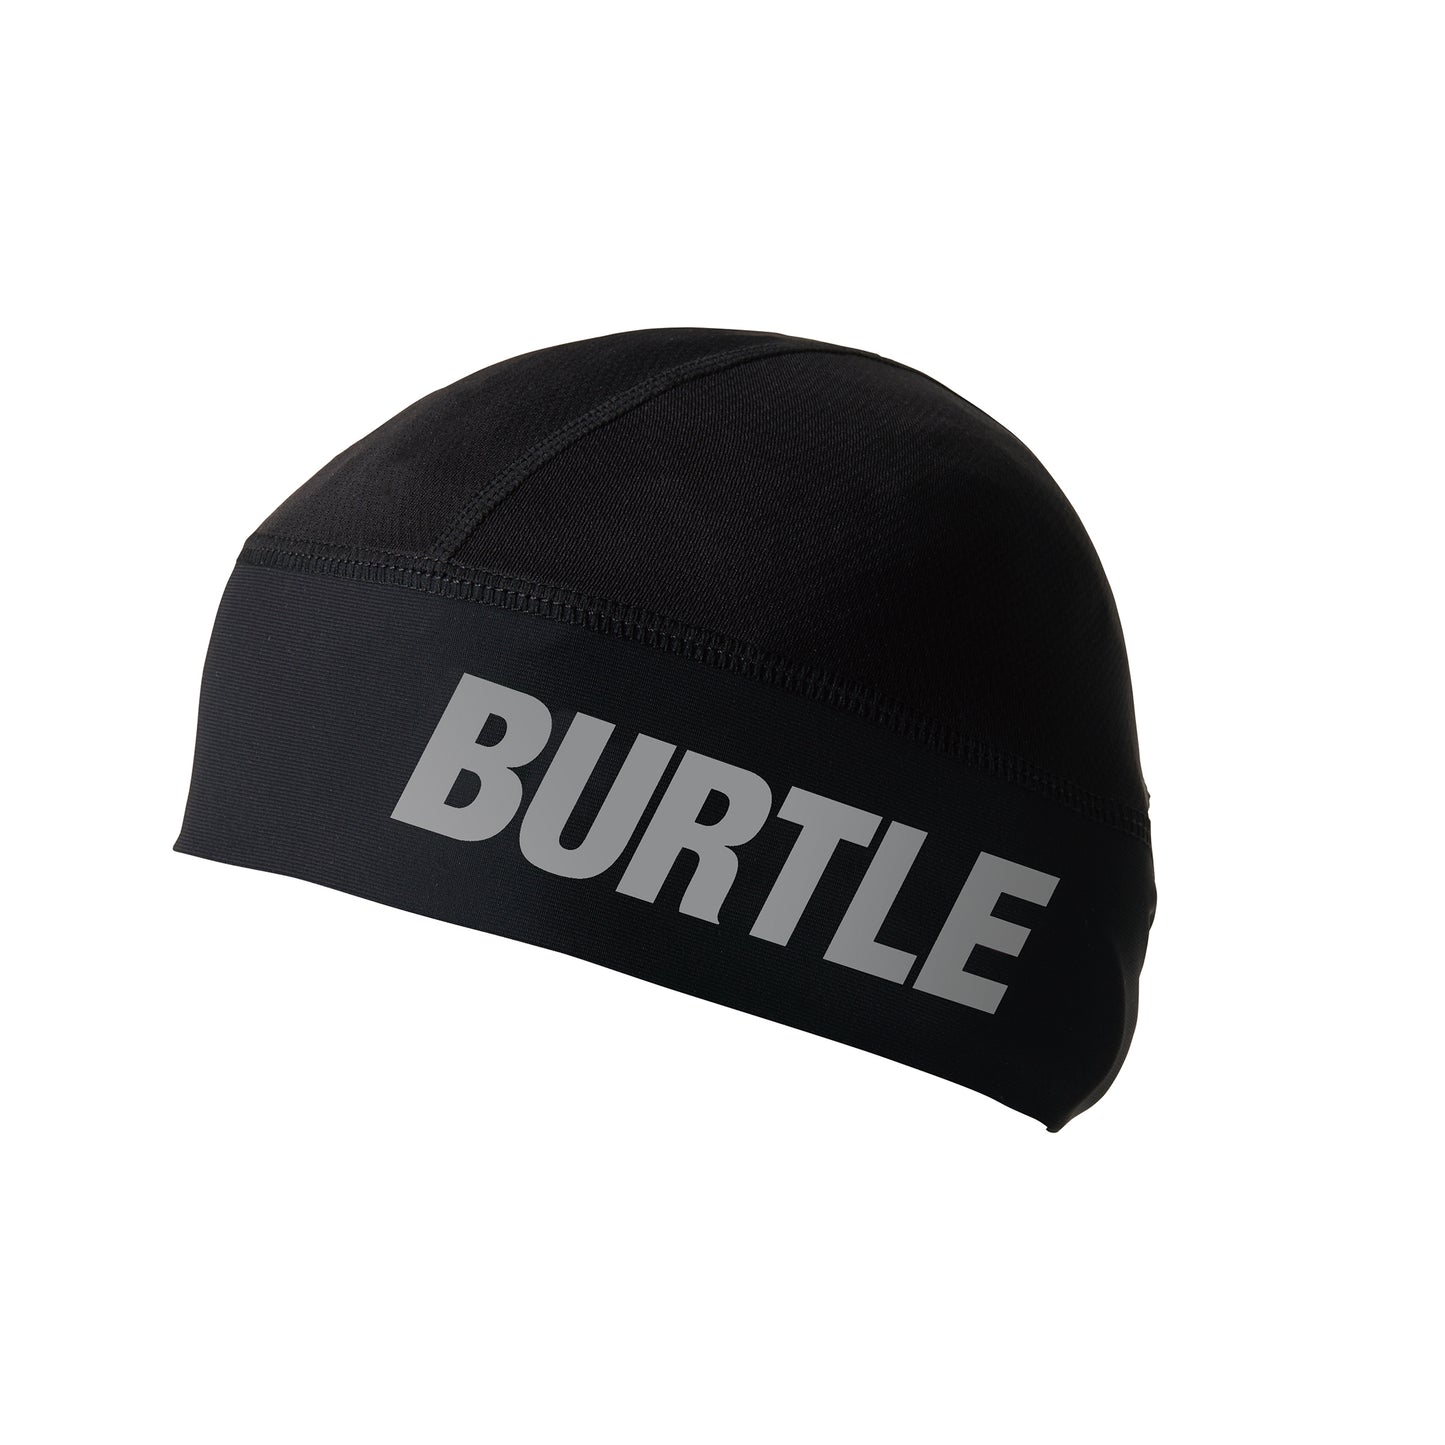 BURTLE【バートル】ヘッドキャップ 4081-4081-5